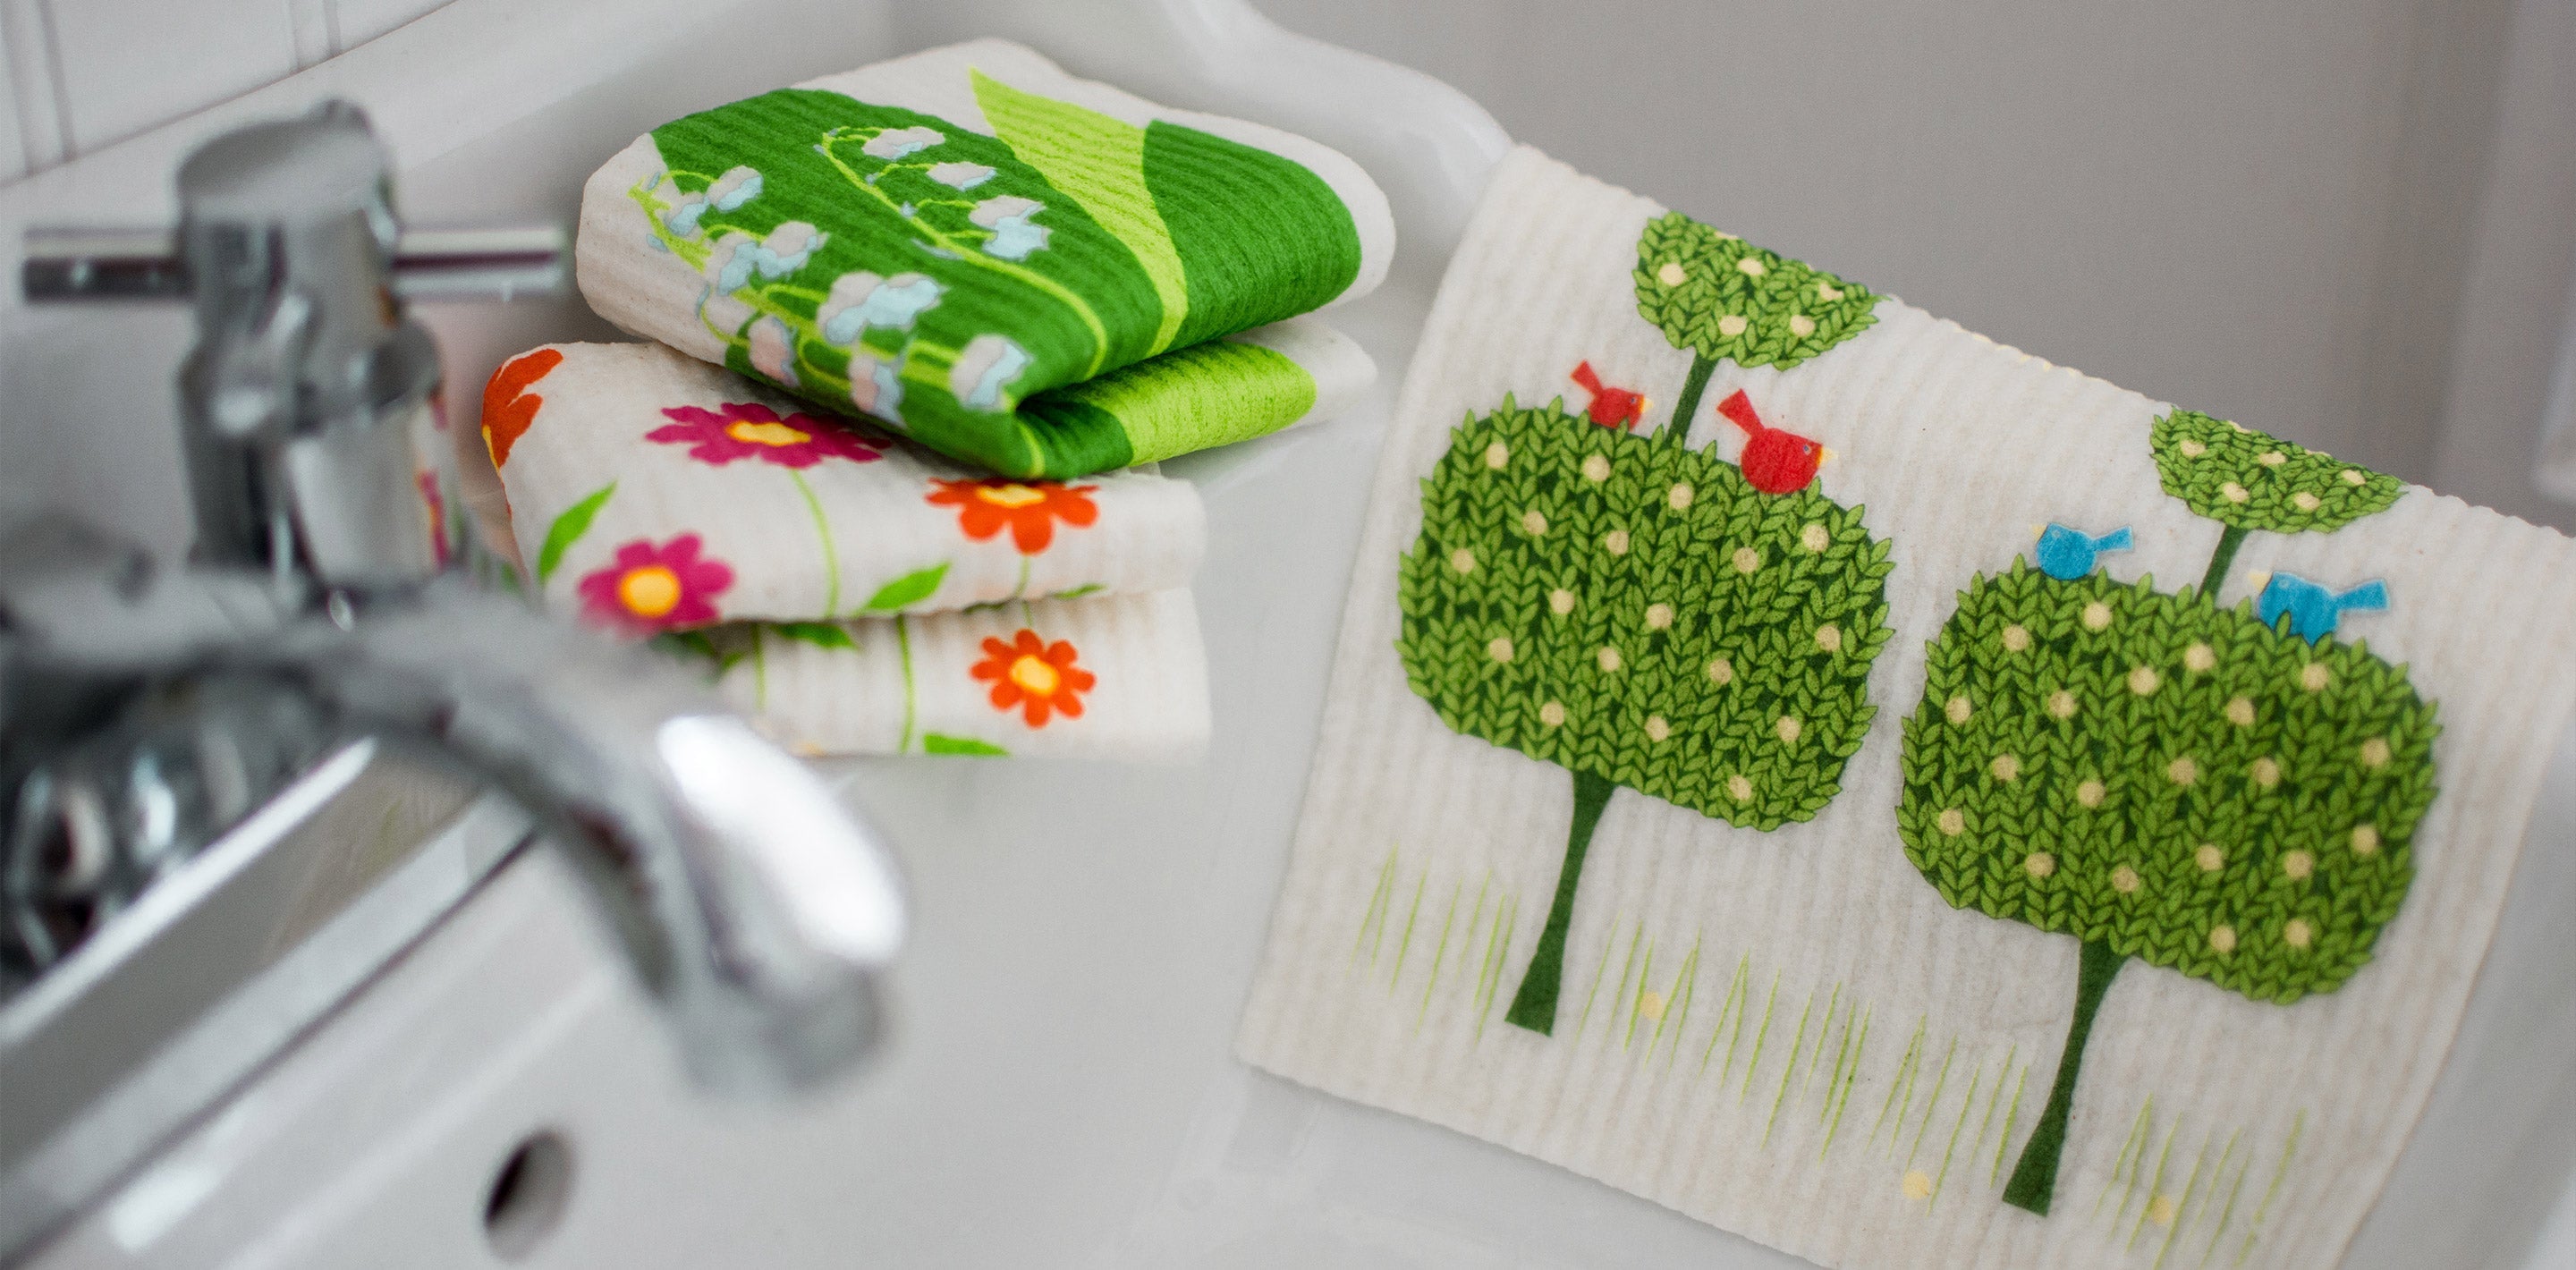 Swedish Drying Mat + Dishcloth Set